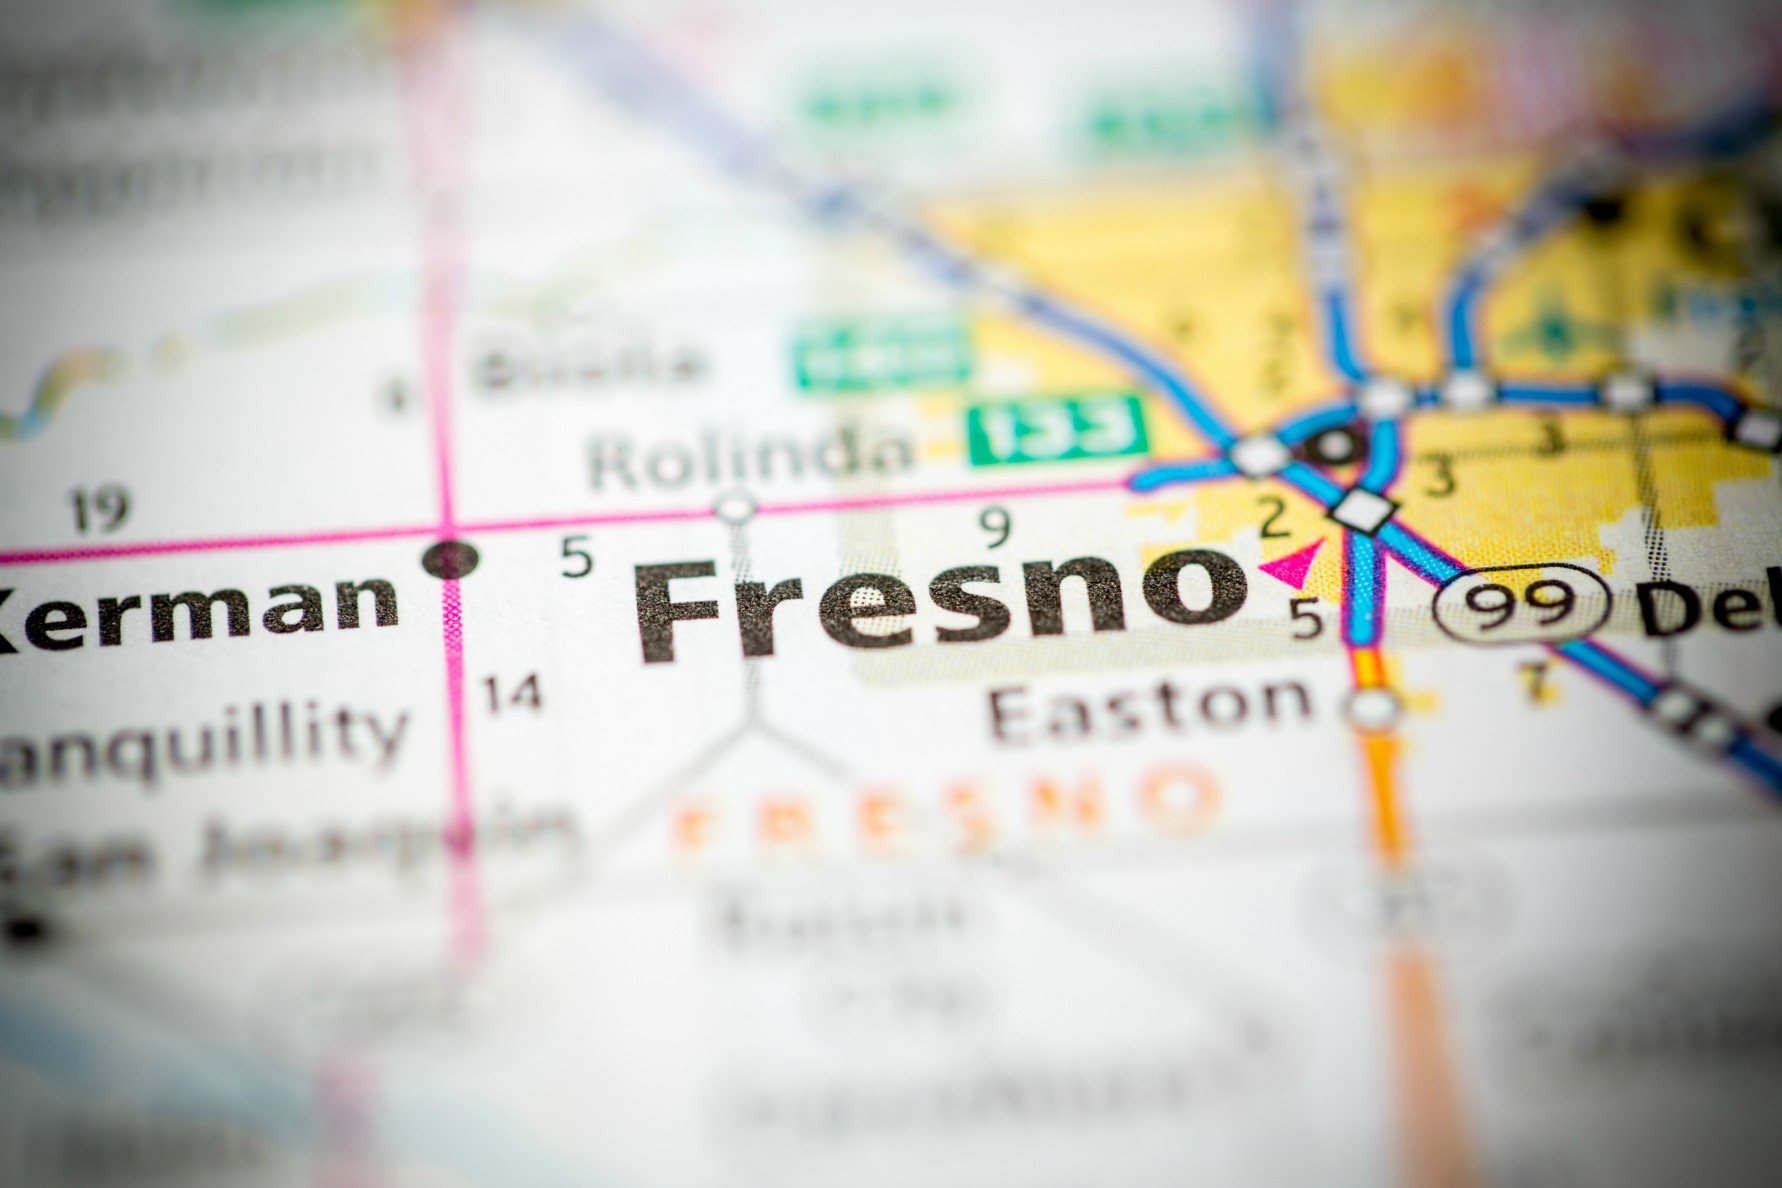 The Best Neighborhoods in Fresno for 2020